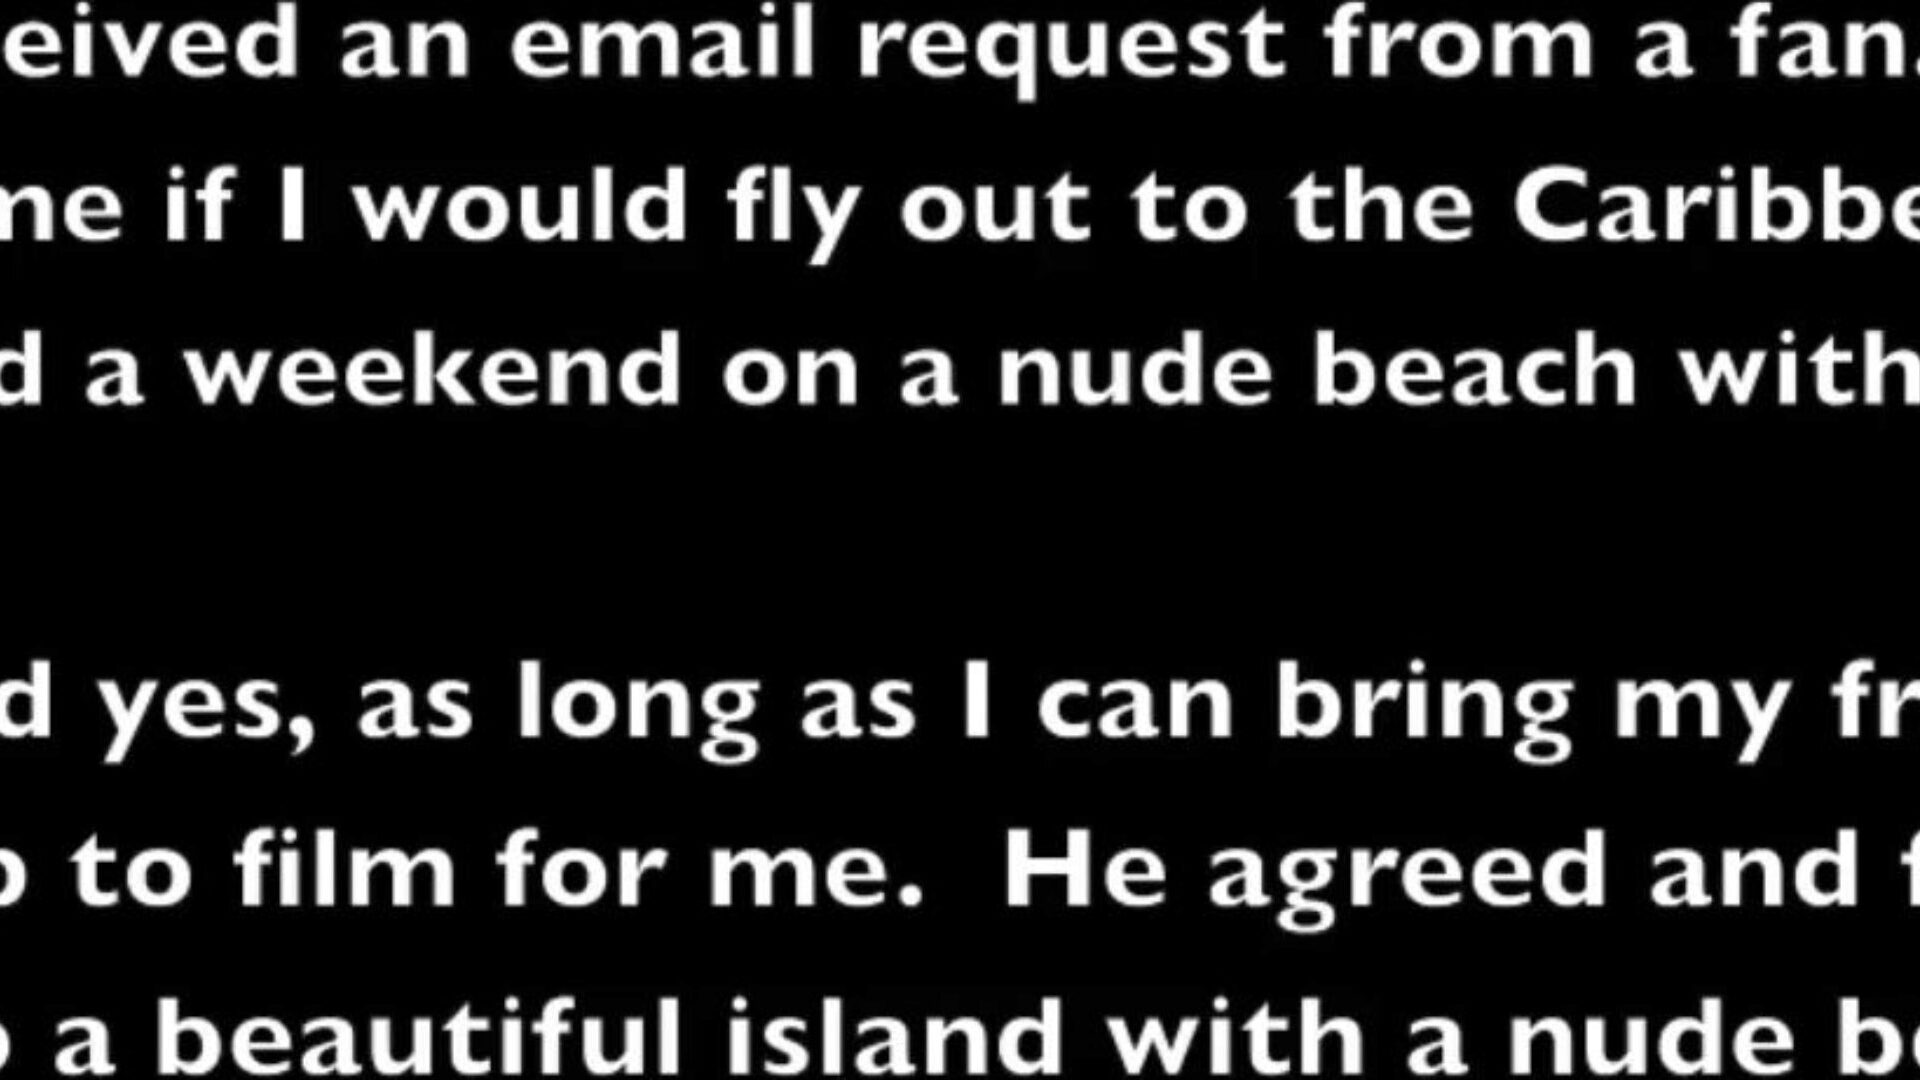 helena price - minhas férias na praia de nudismo no Caribe, parte 2 - sendo apalpada por um homem negro!